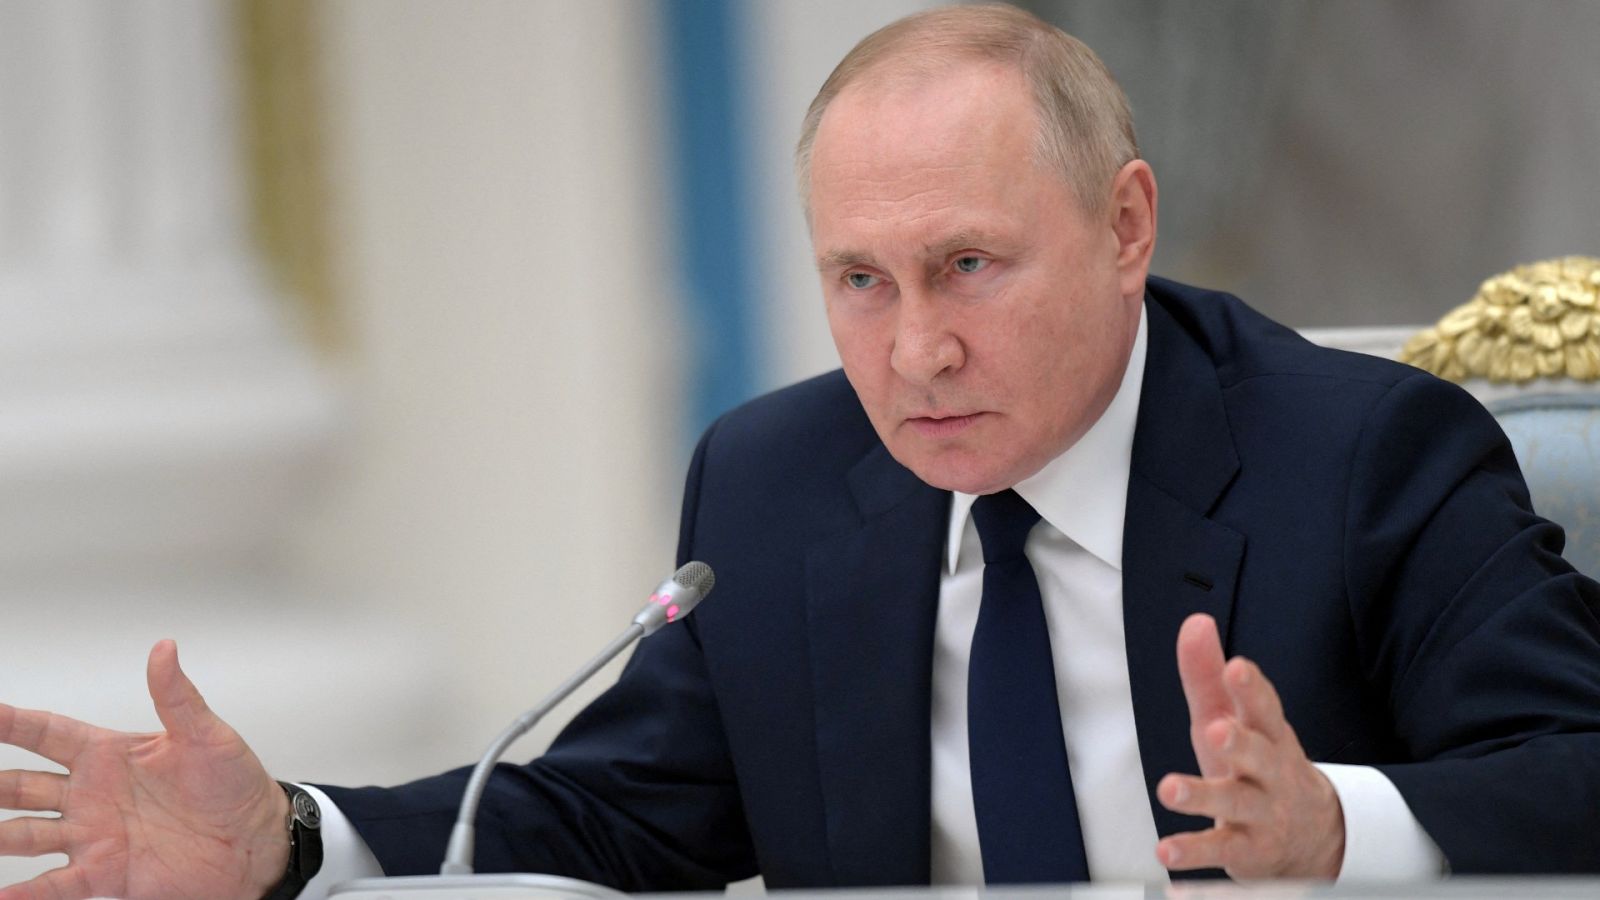 El presidente ruso, Vladímir Putin, dirigiéndose a los líderes parlamentarios